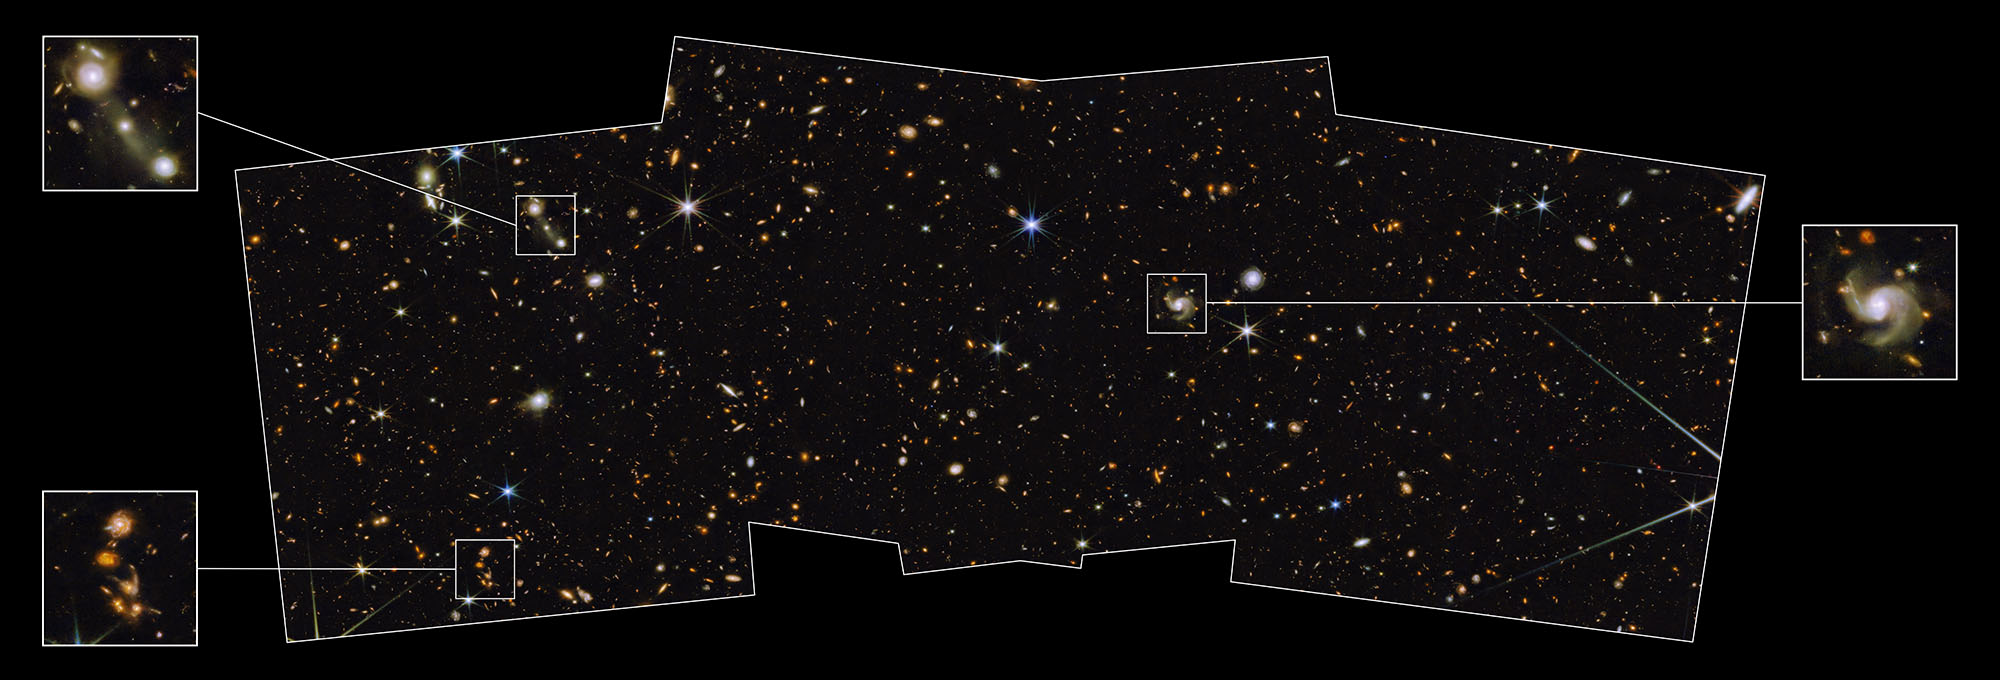 Kuzey ekliptik kutbunun görüntüsü, uzak galaksilerle noktalı, sarmal ve eliptik siyah alanı gösteriyor